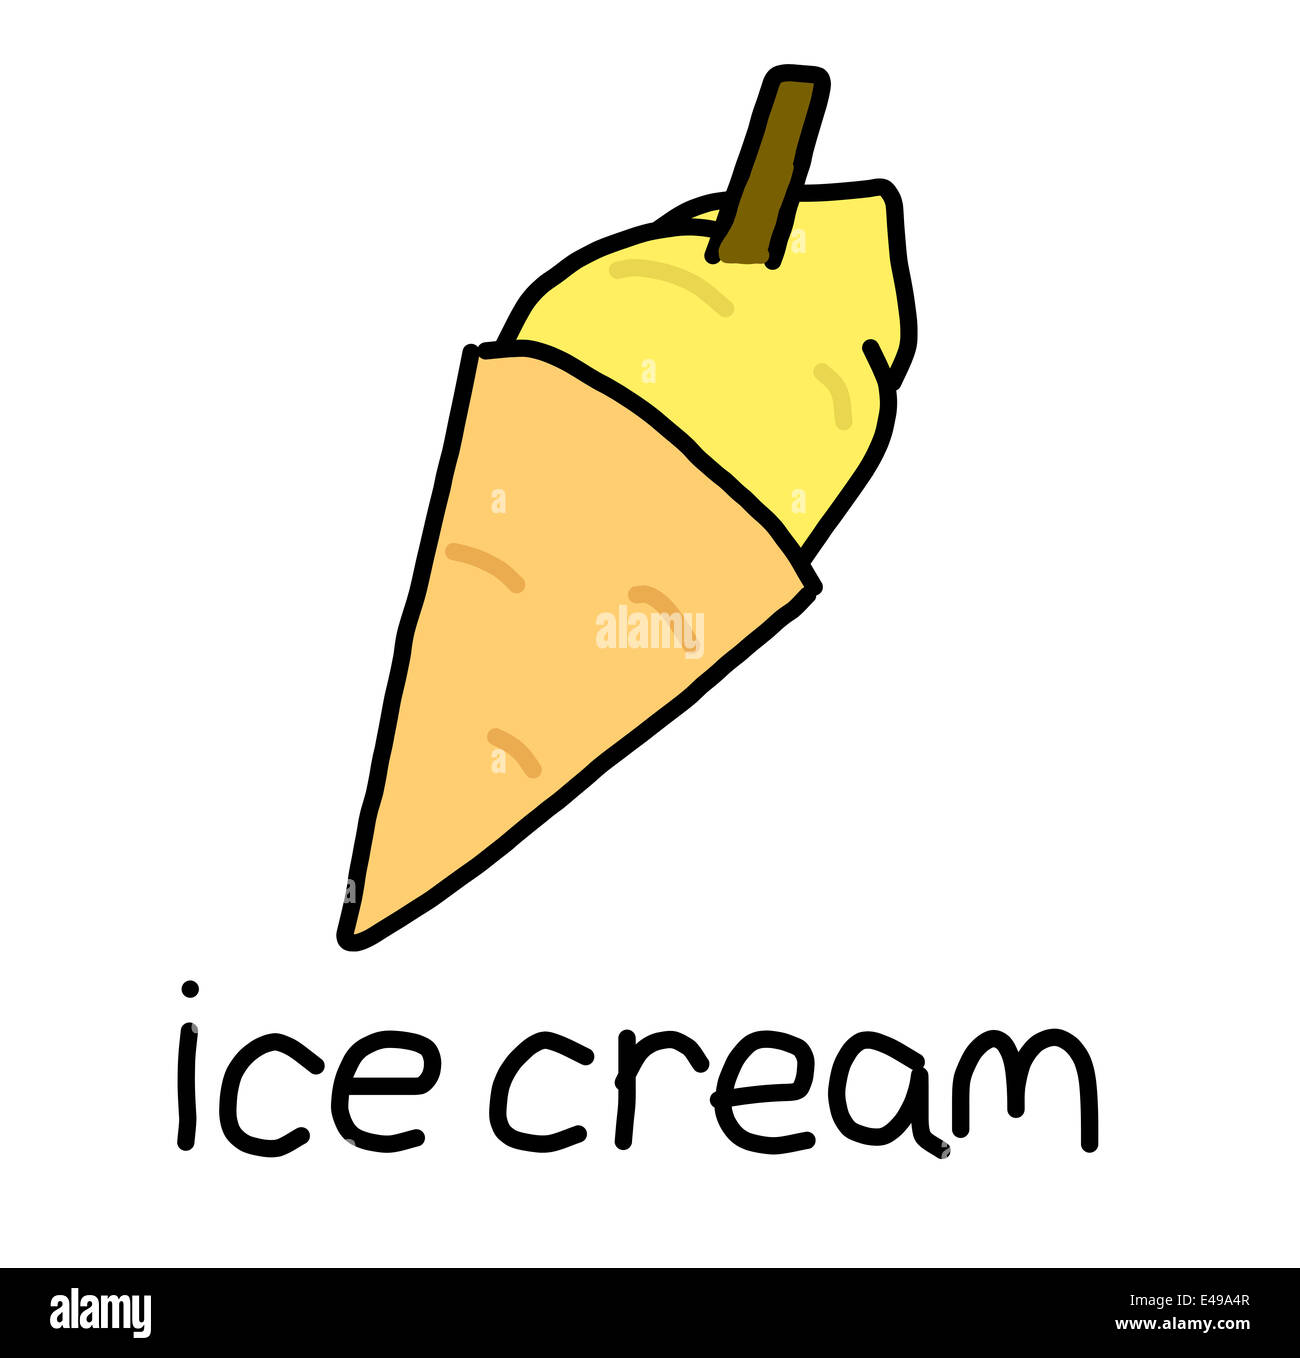 Illustrazione di alfabeto parole - gelato Foto Stock